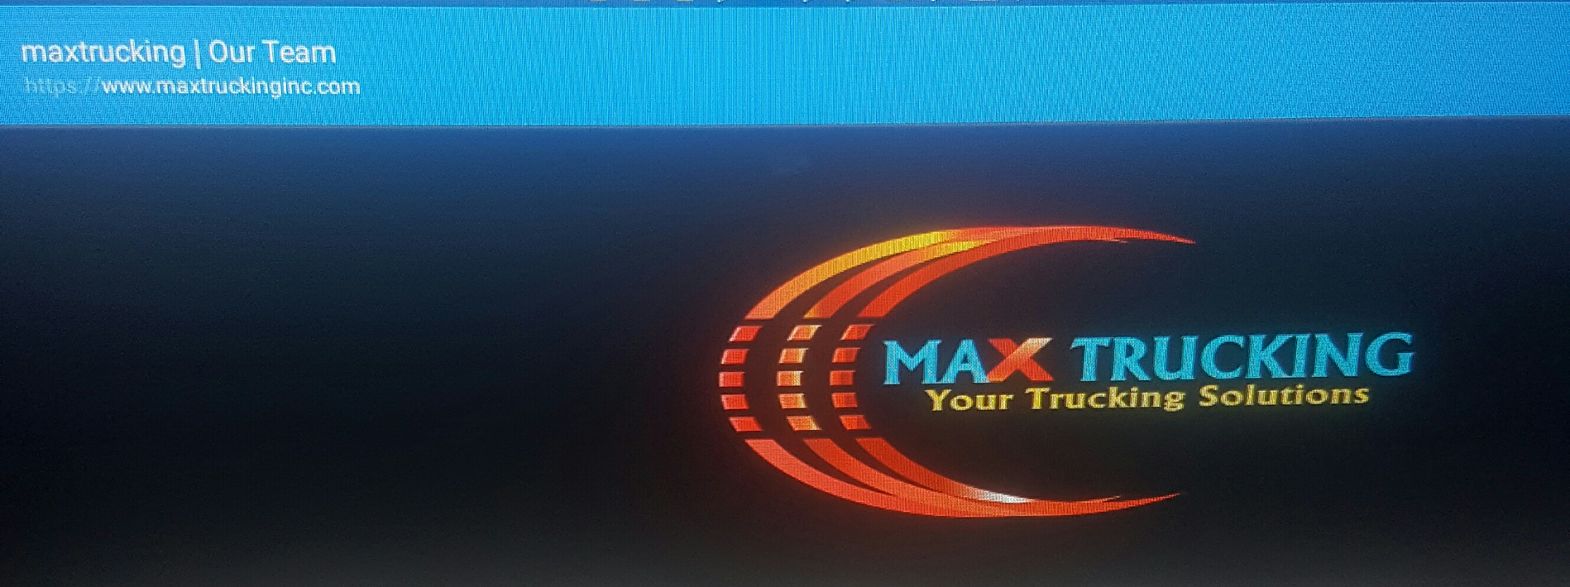 Max Trucking Inc